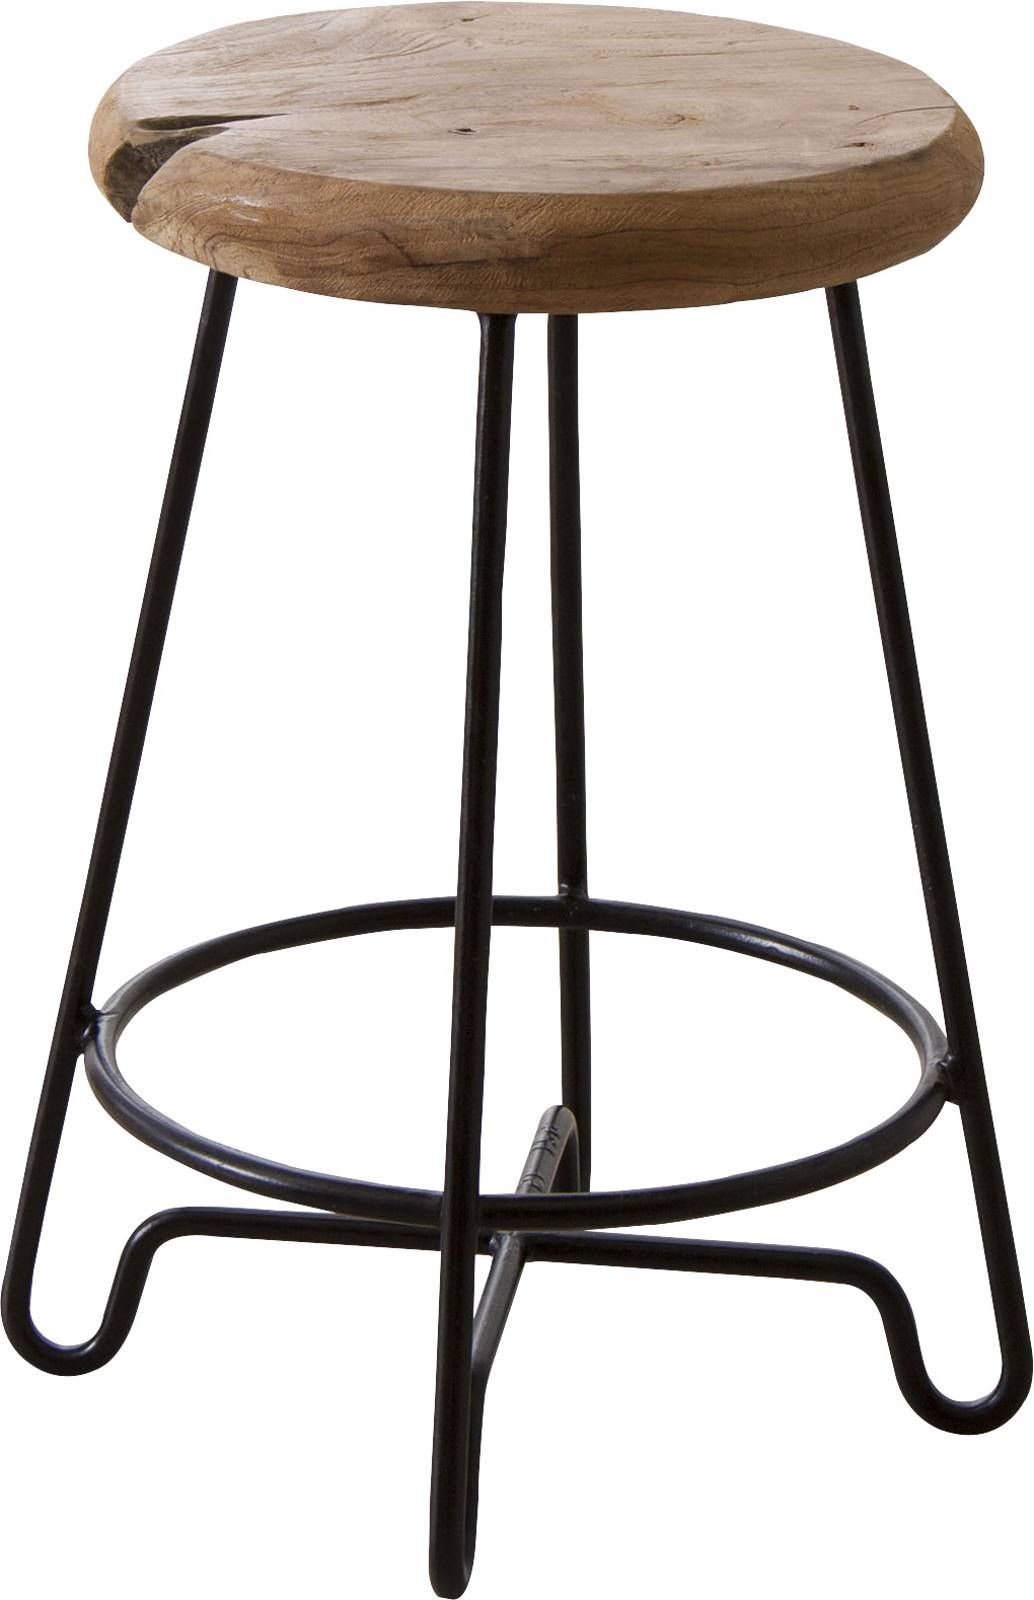 ラウンドスツール アイアンスツール ウッドスツール ミニチェア 植物台 スタンド 低い椅子 サイドテーブル 子供用 キッズ 木製 アンティーク  ビンテージ ブラウン 北欧 無垢 レトロ